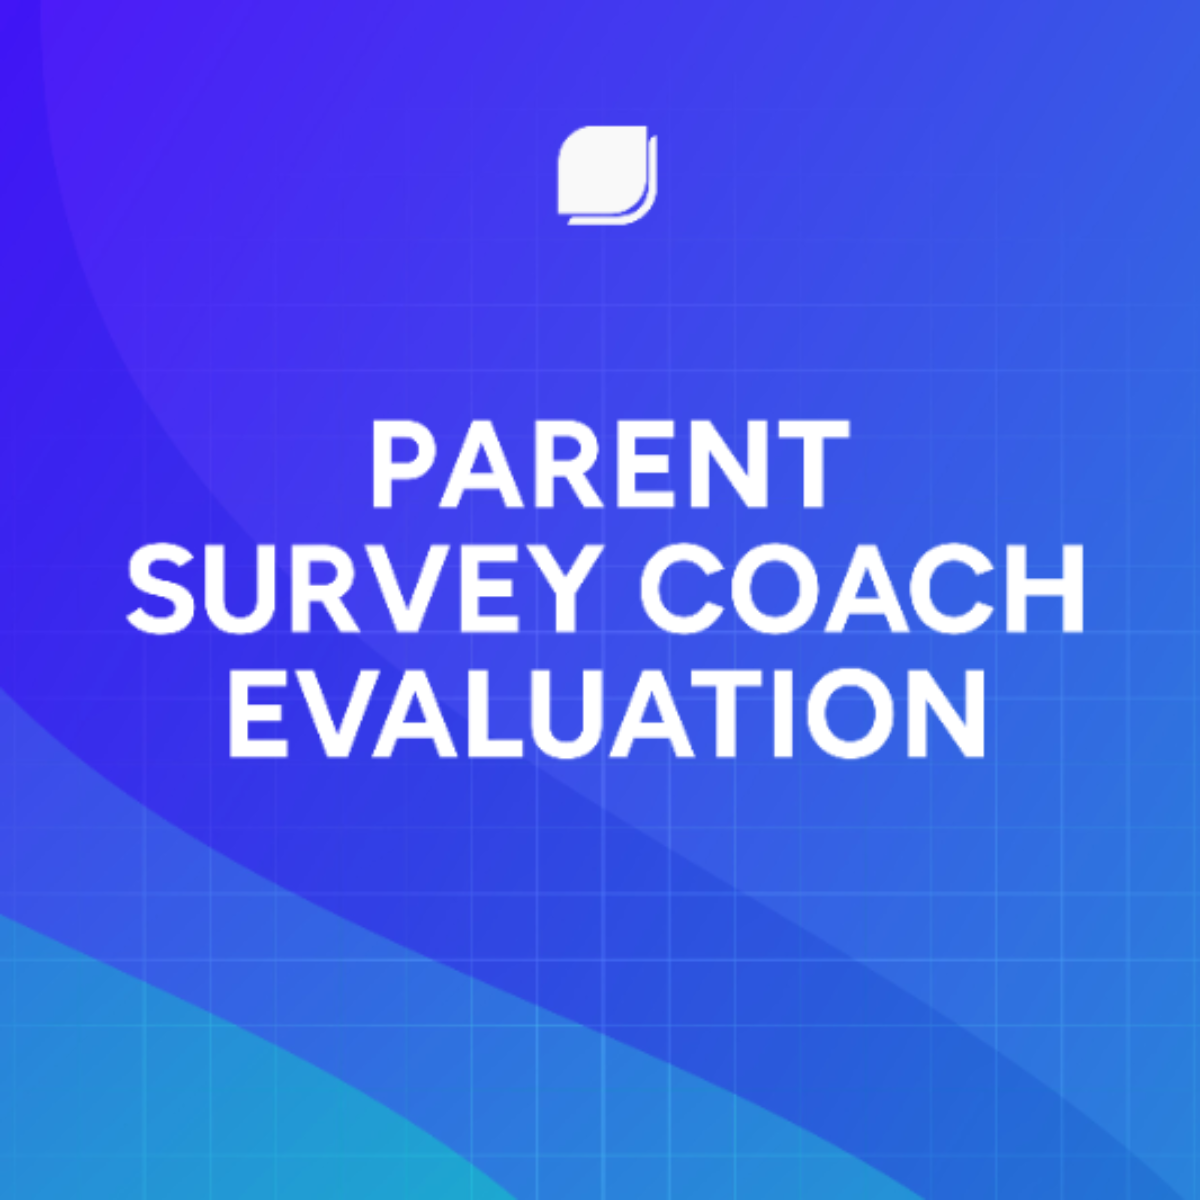 Free Parent Survey Coach Evaluation Template